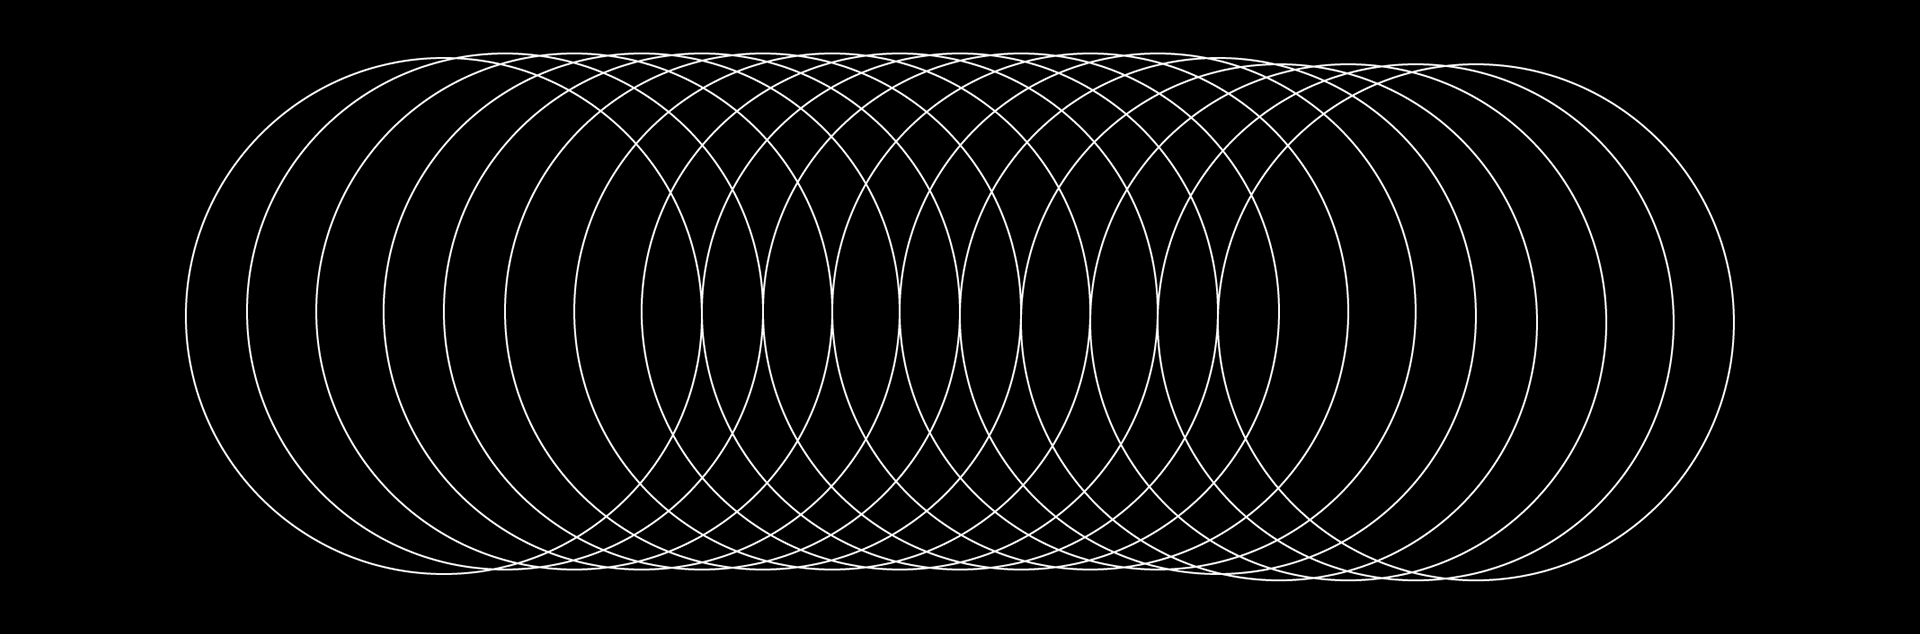 ilustração em preto e branco com círculos organizados em sequência, todos do mesmo tamanho